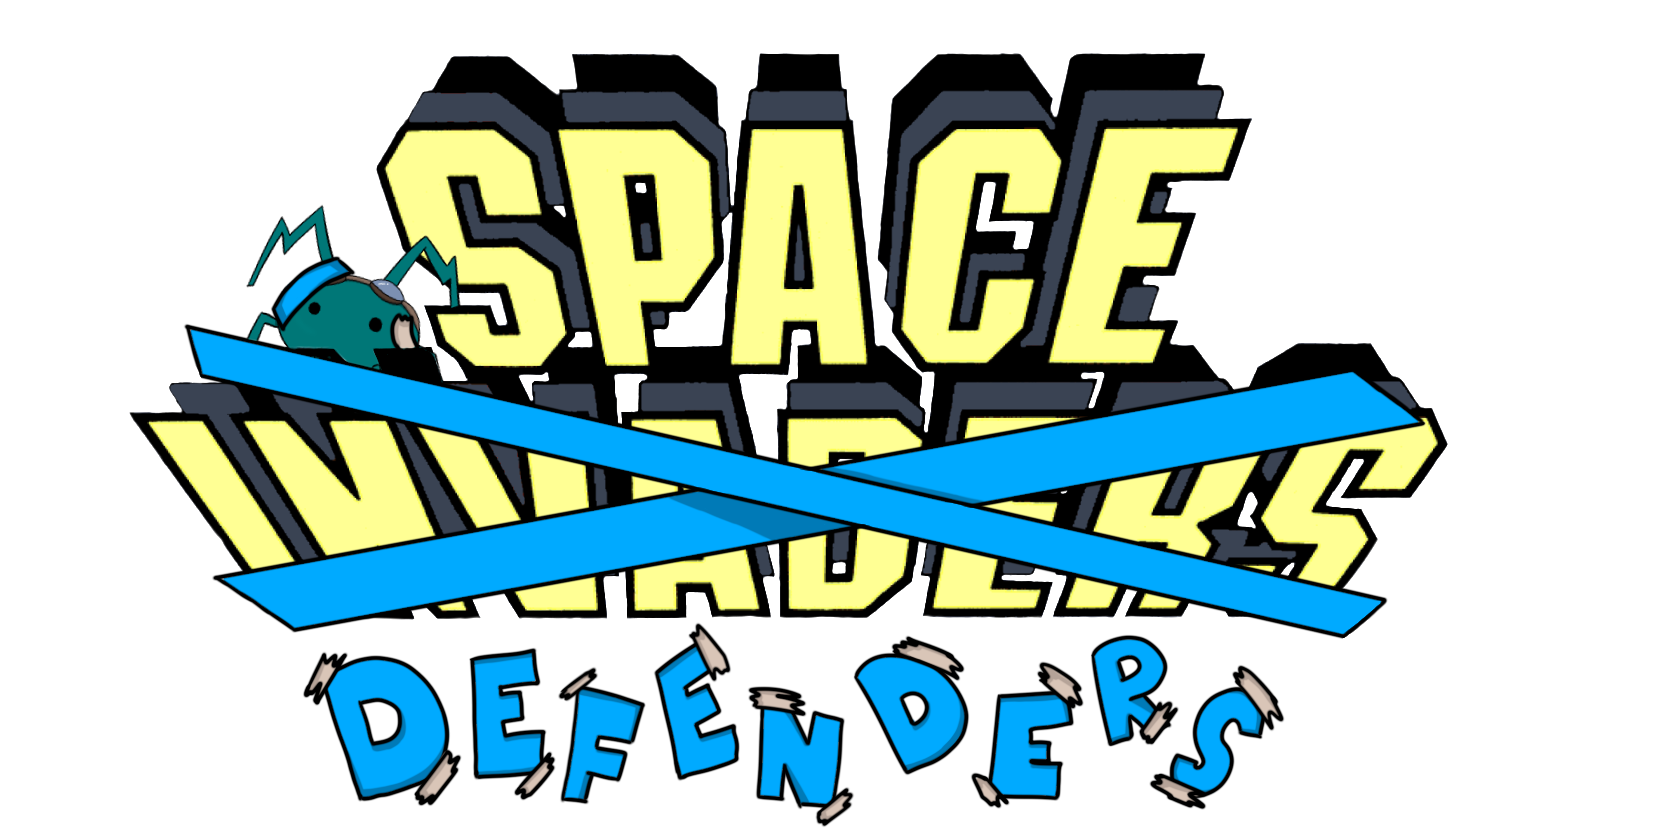 Space Defenders